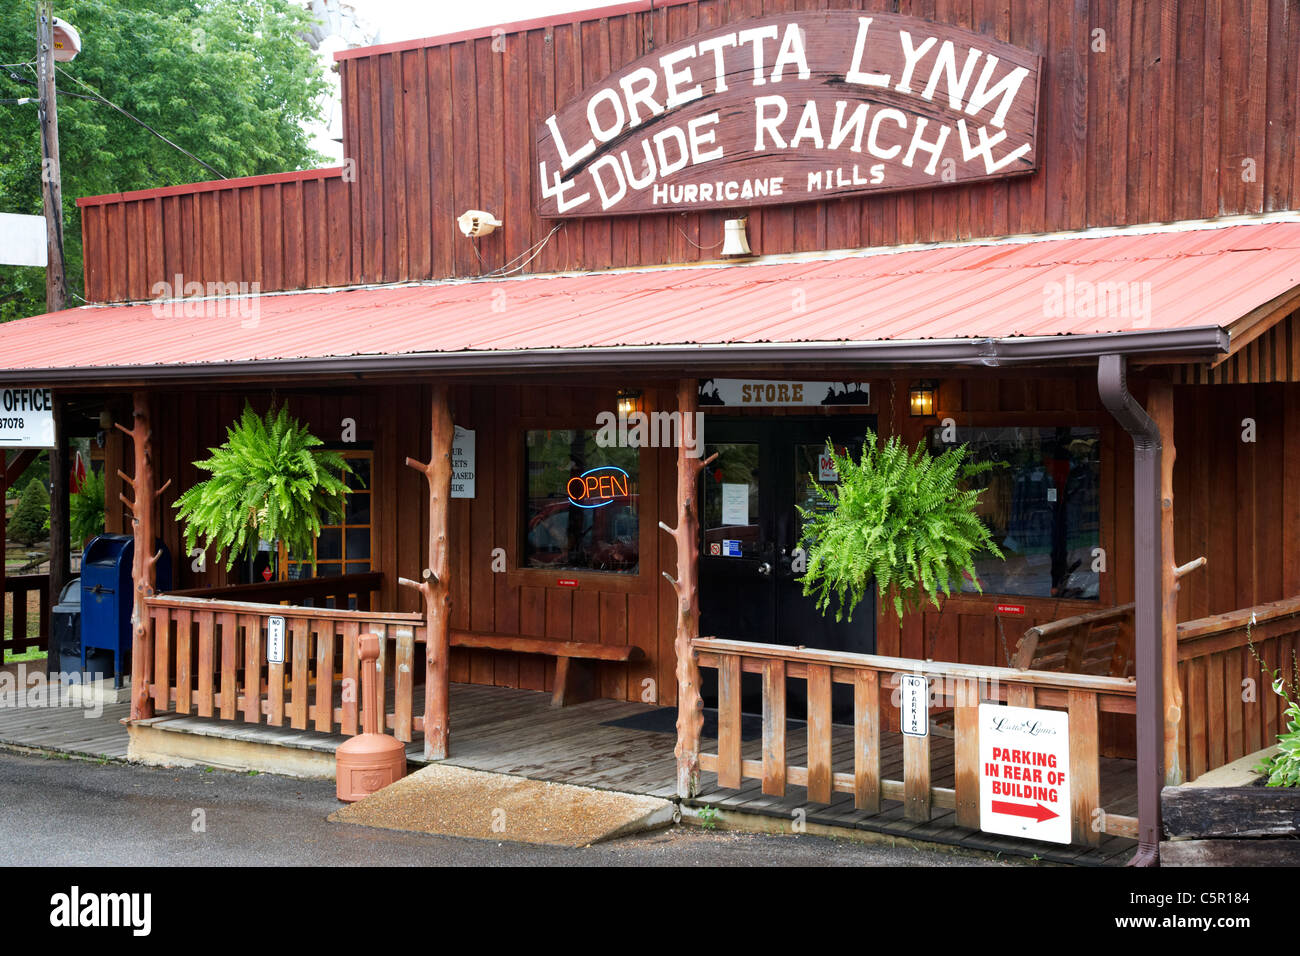 Shop Shop und Postamt an der Loretta Lynn Ferienranch Hurrikan Mühlen Tennessee usa Stockfoto